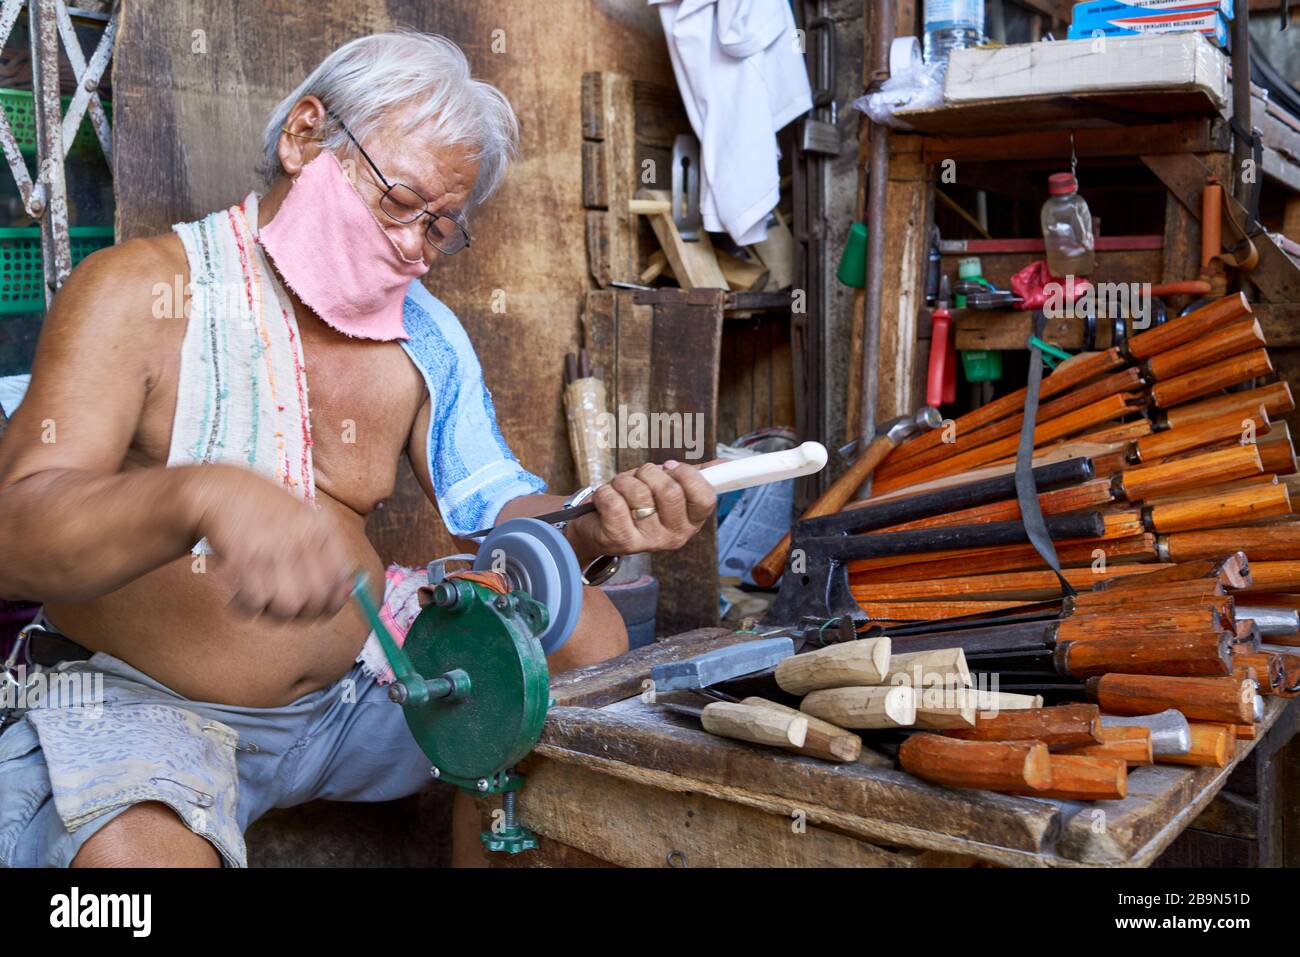 Man sharpening knives. Stock Photo